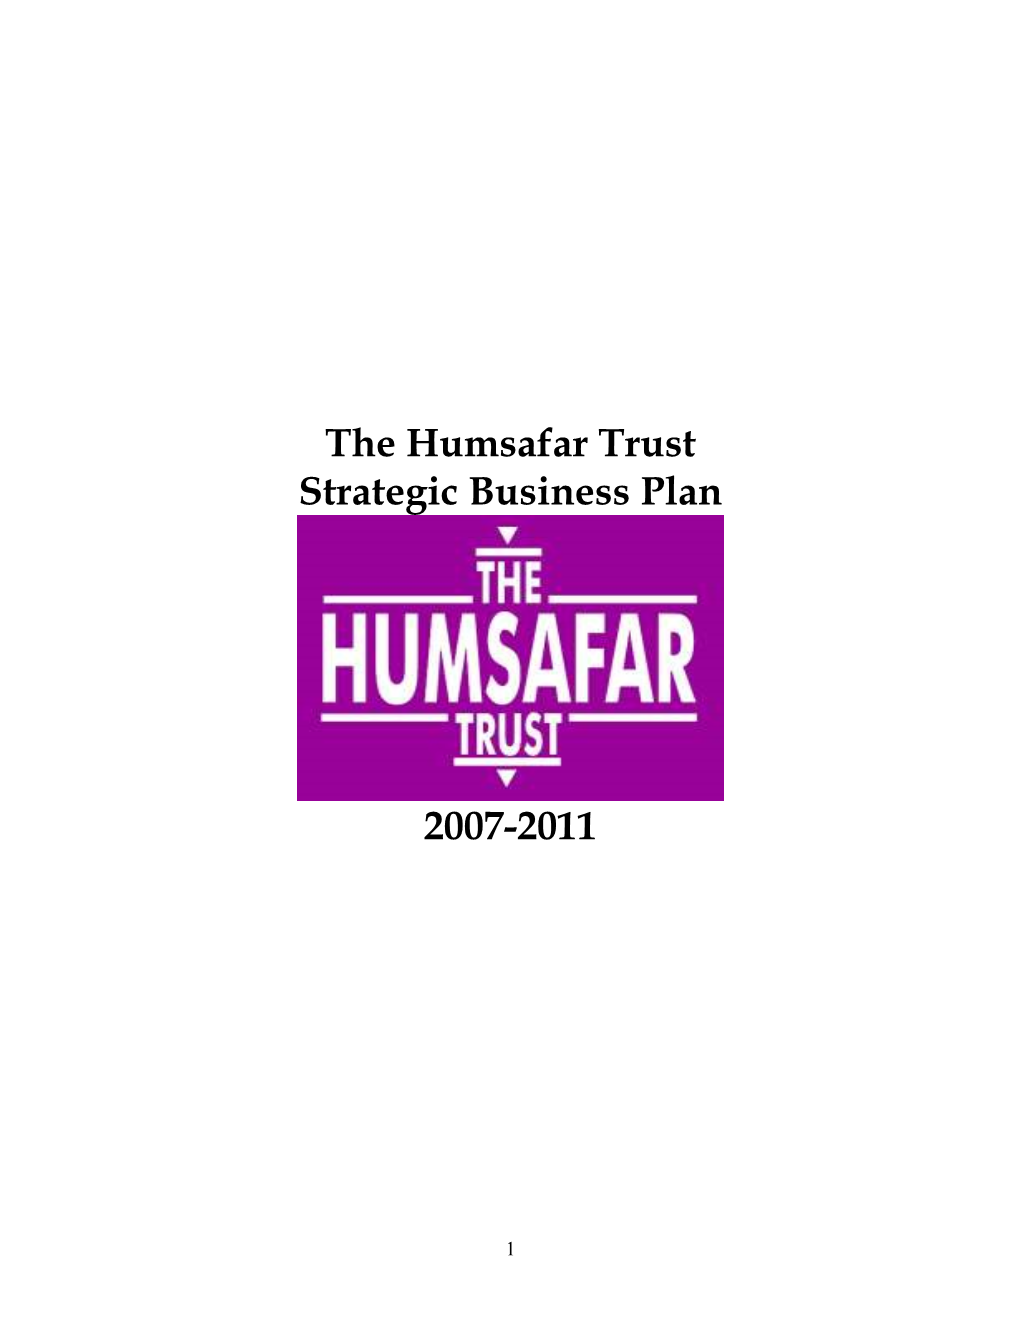 The Humsafar Trust Strategic Business Plan 2007-2011